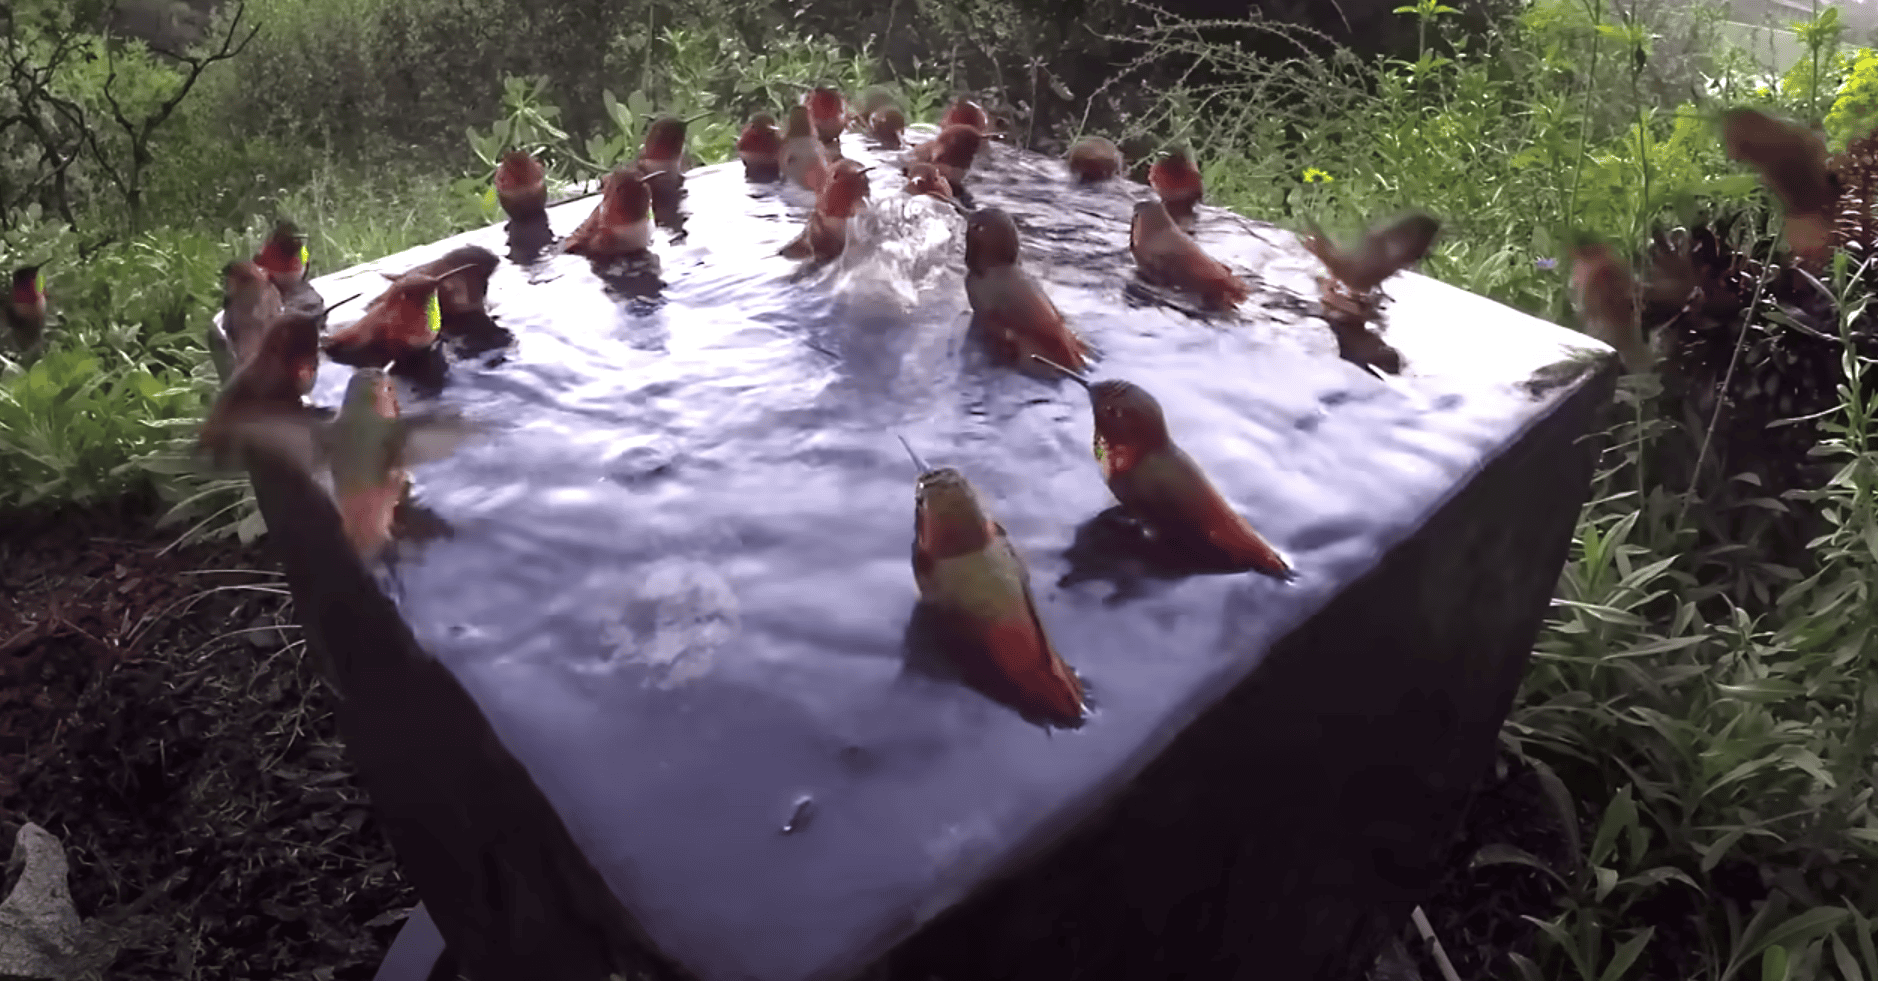 Hummingbird bath